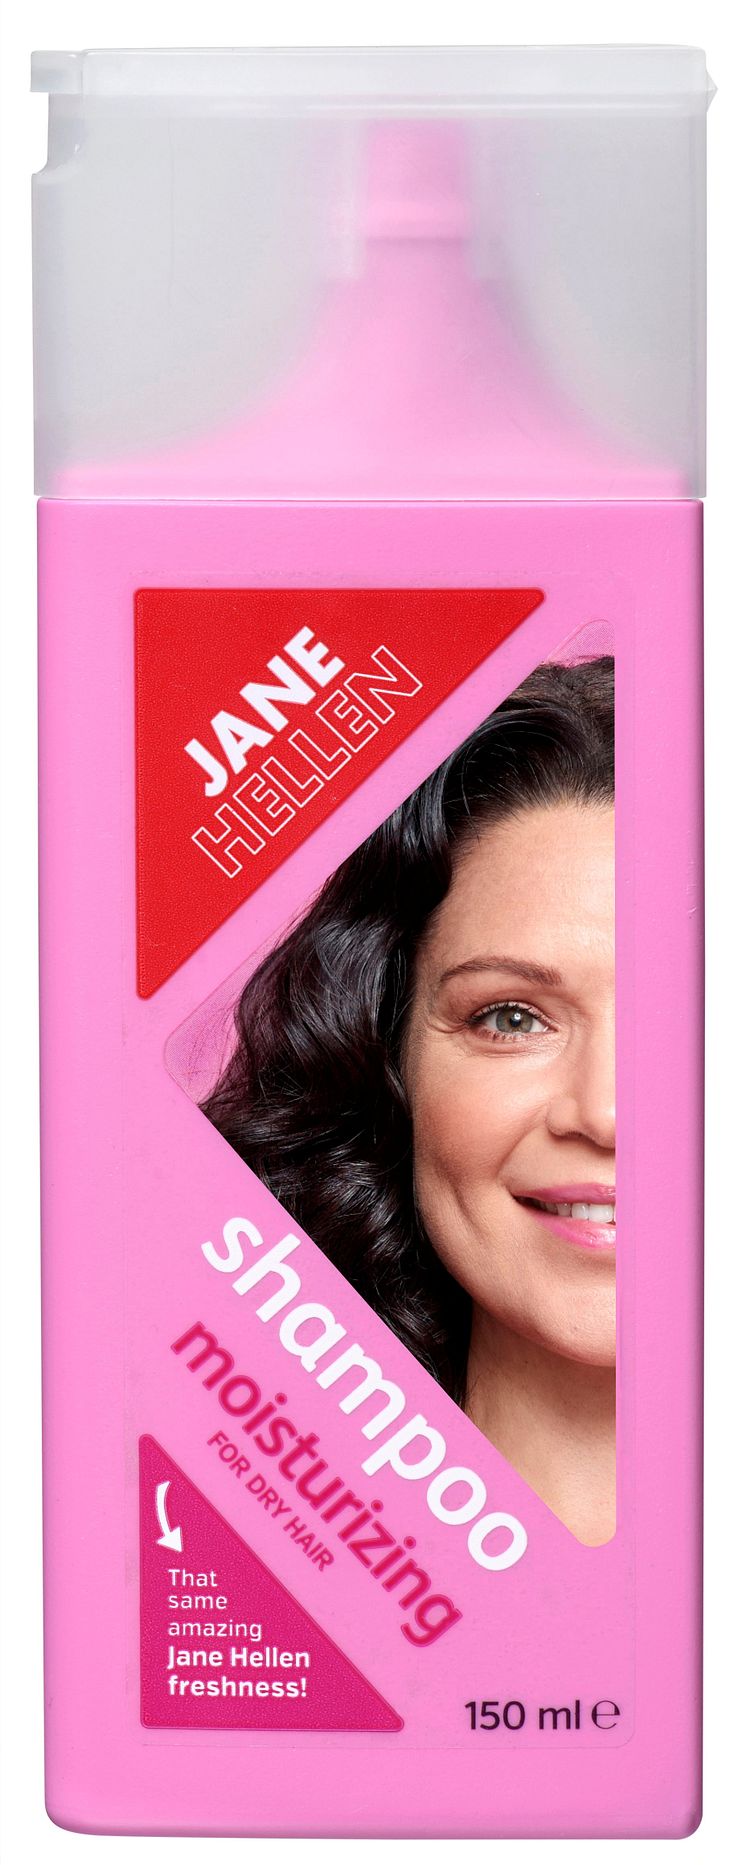 NEW! JANE HELLEN SHAMPOO FOR DRY HAIR 150 ML 29,90 SEK.jpg